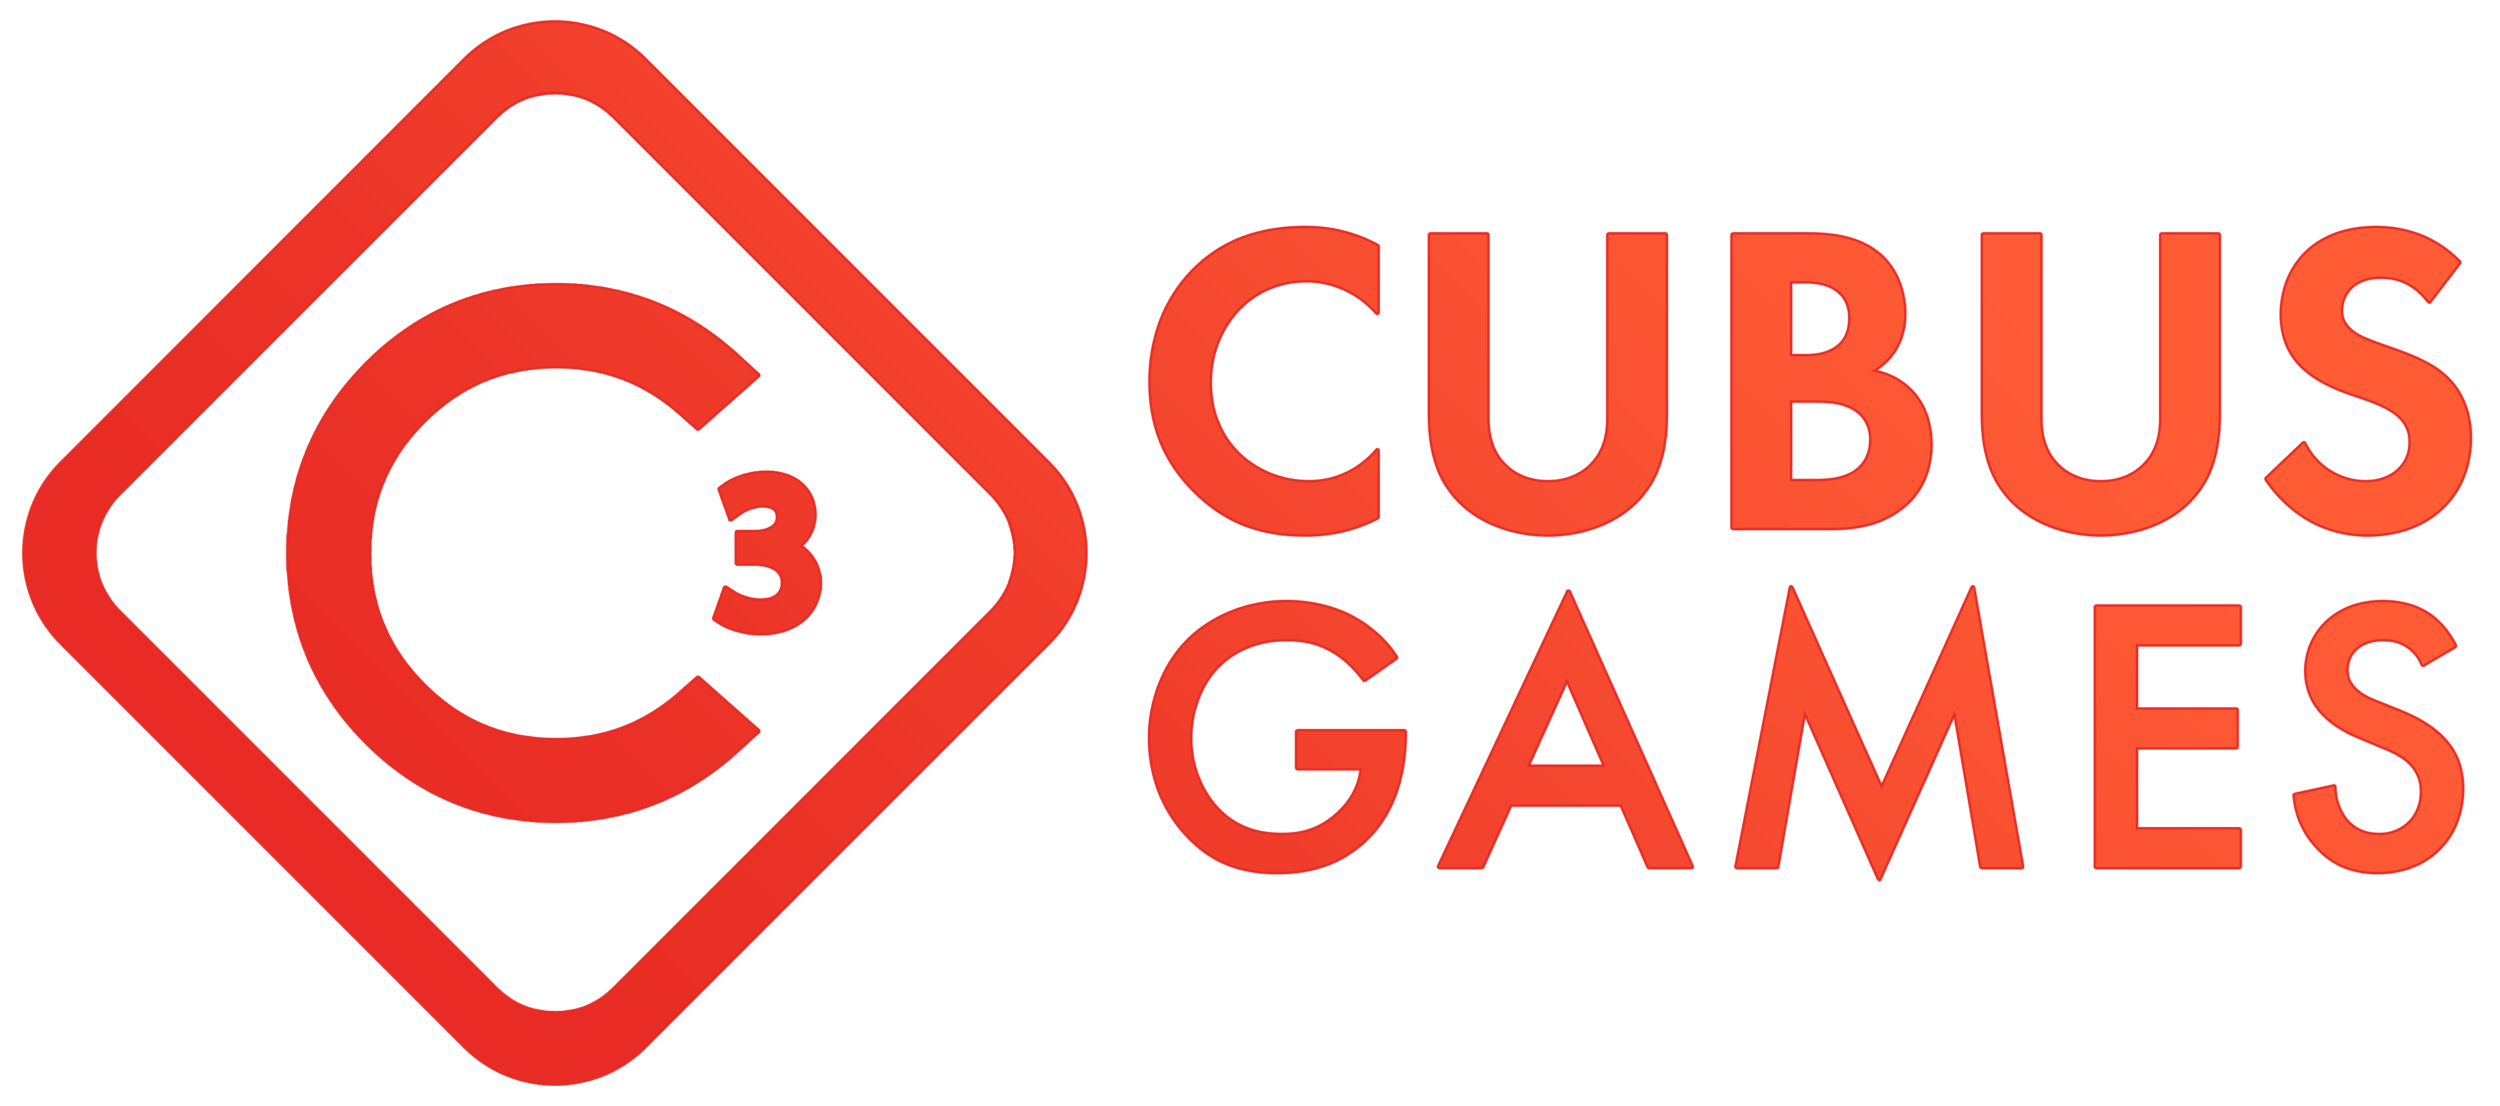 CUBUS GAMES - NARRATIVE ALCHEMISTS